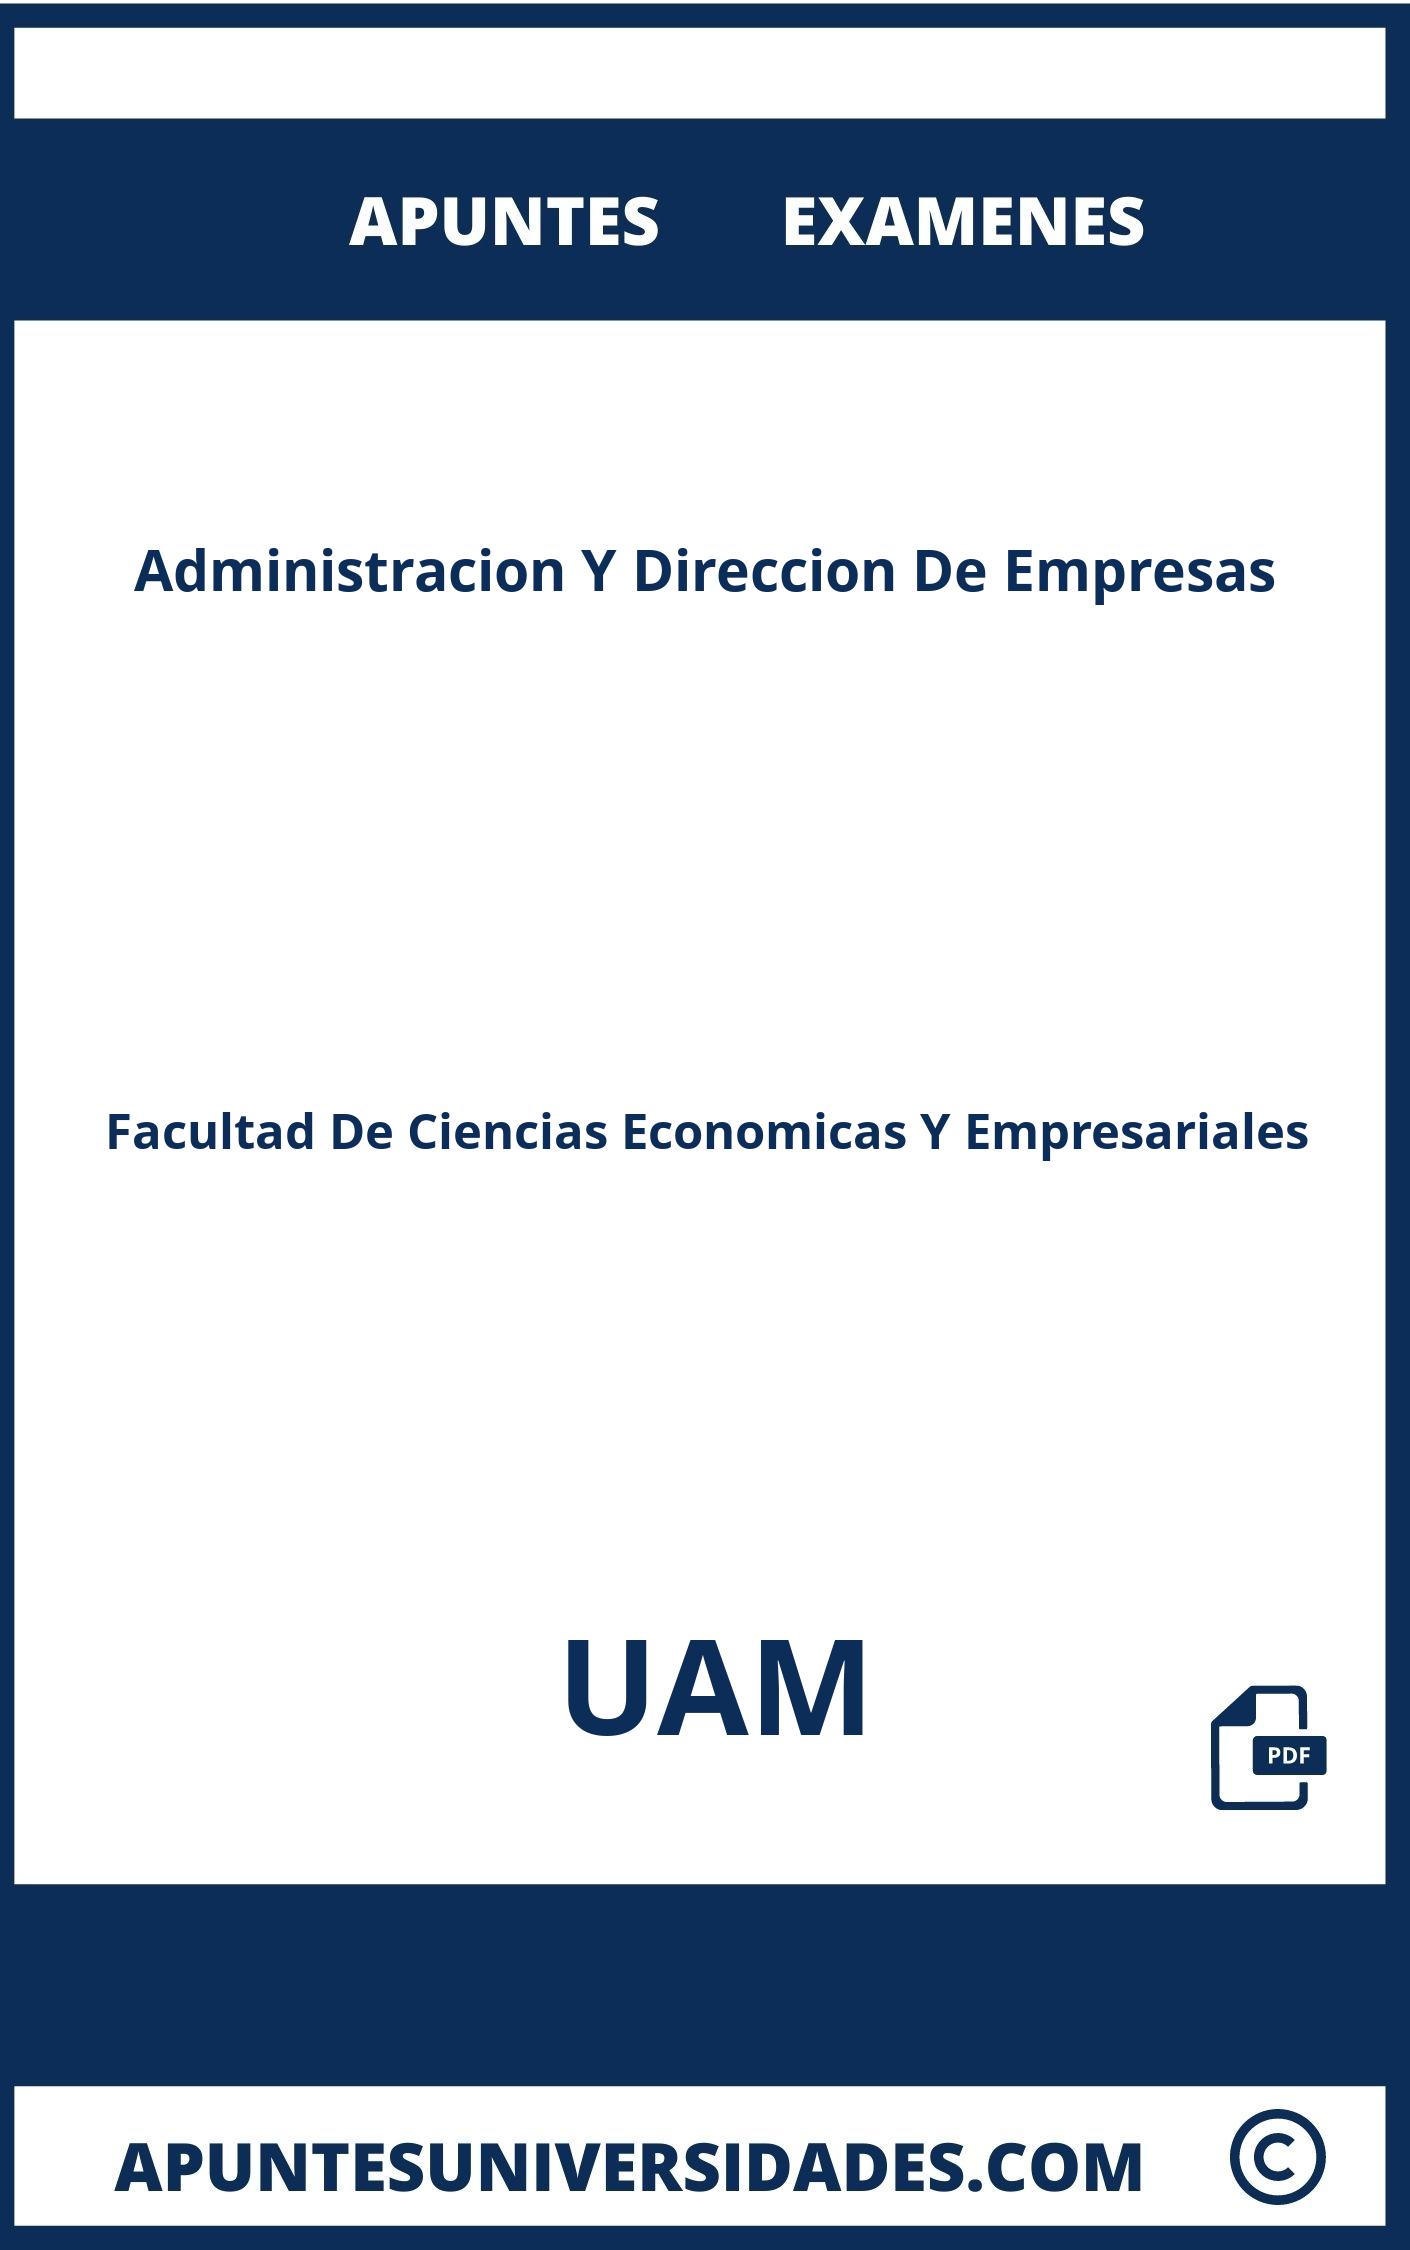 Examenes y Apuntes Administracion Y Direccion De Empresas UAM